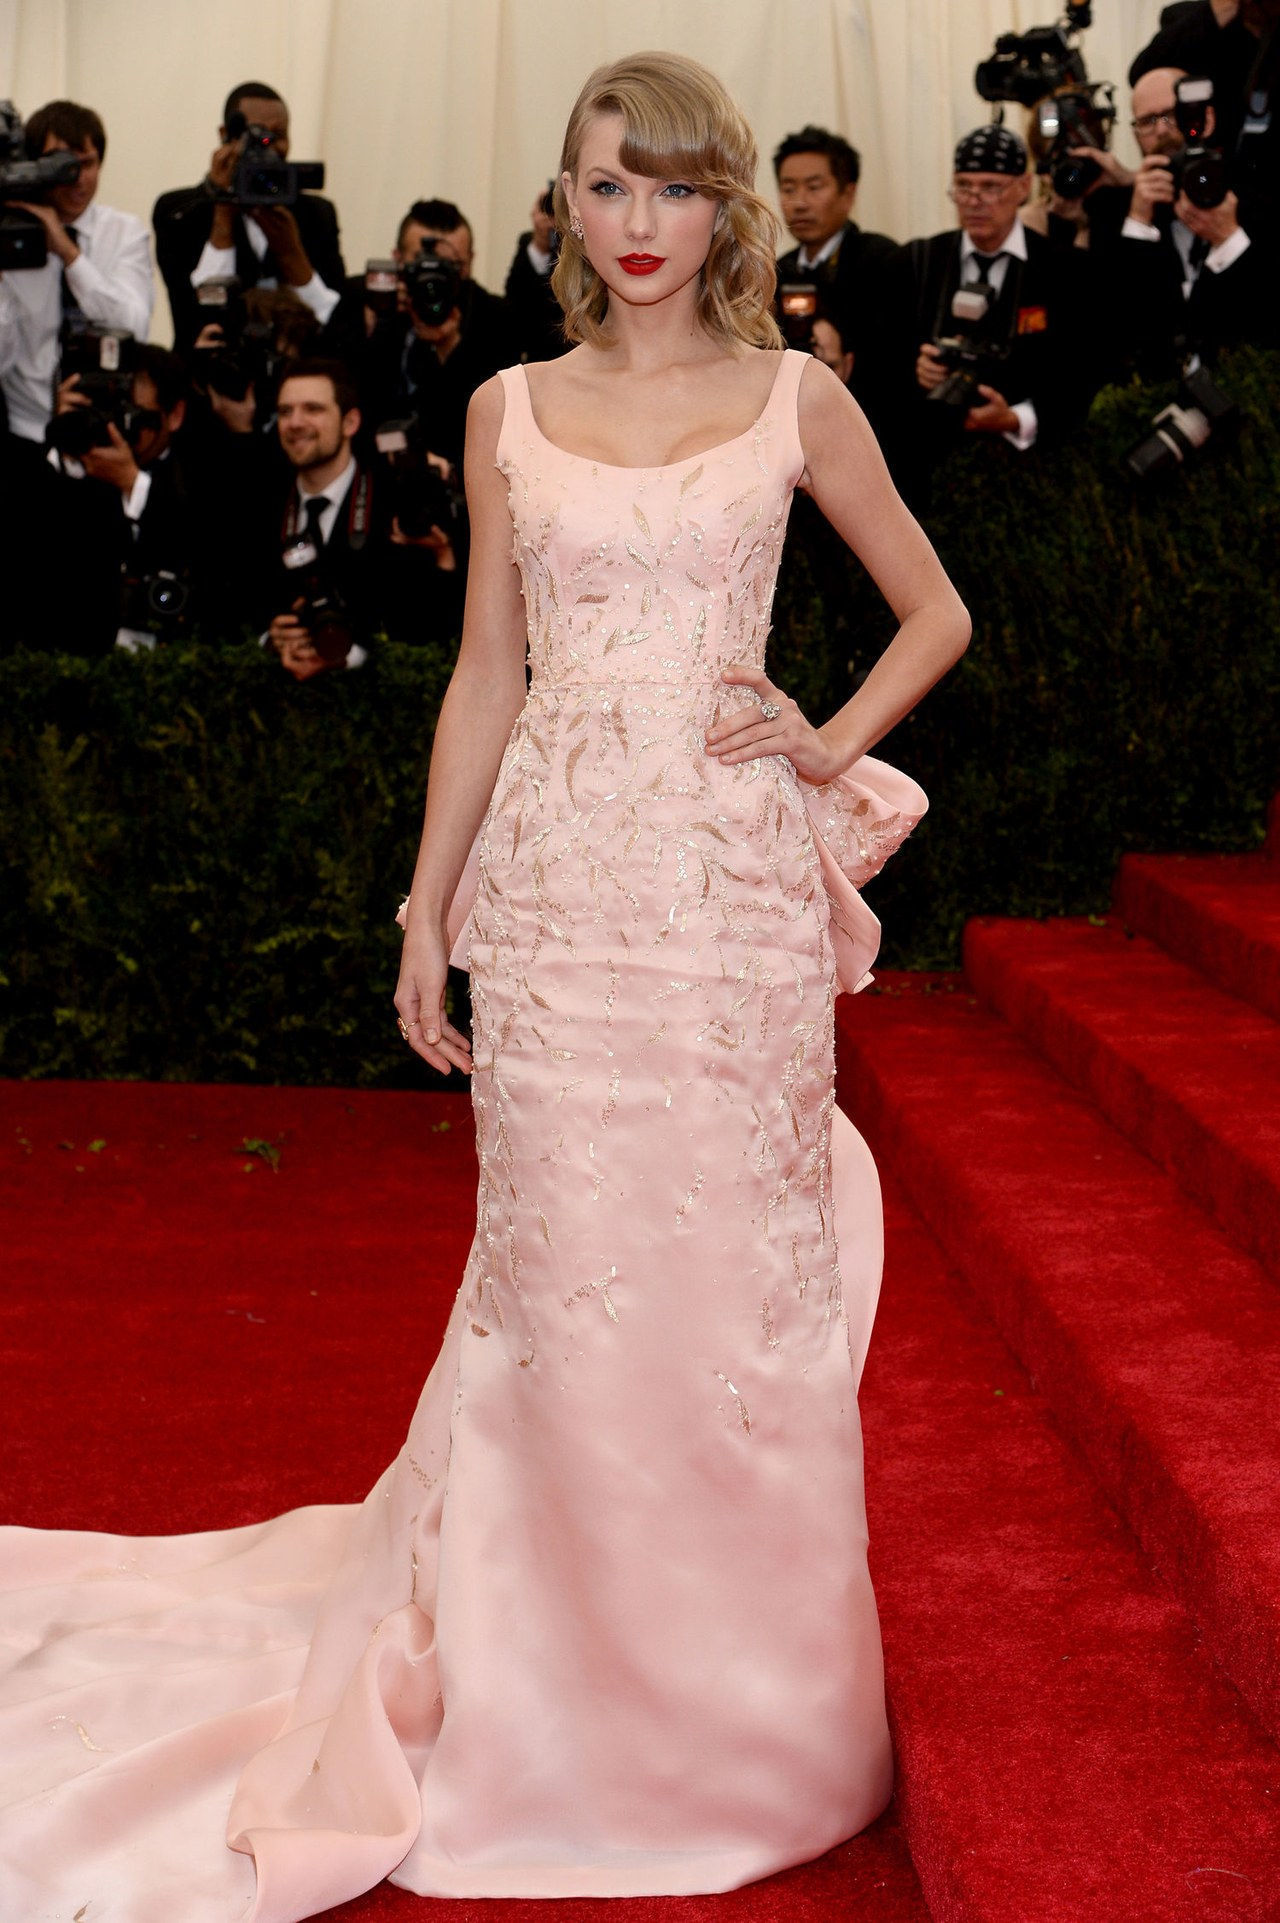 Taylor swift pink oscar de la renta gown met gala